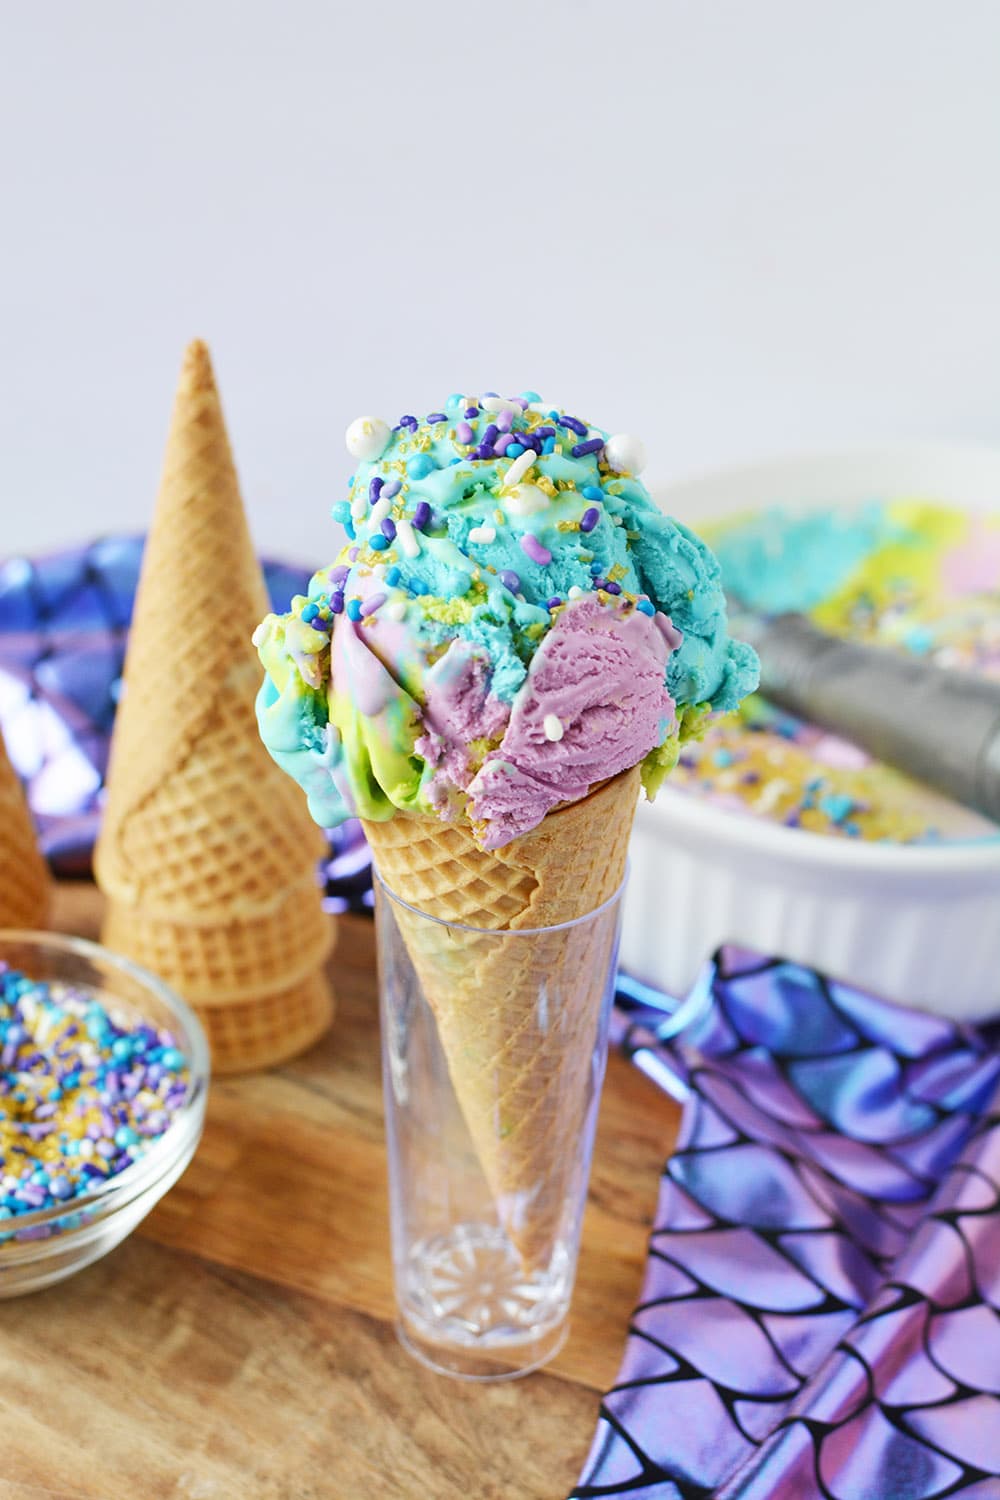 Cone of mermaid ice cream.